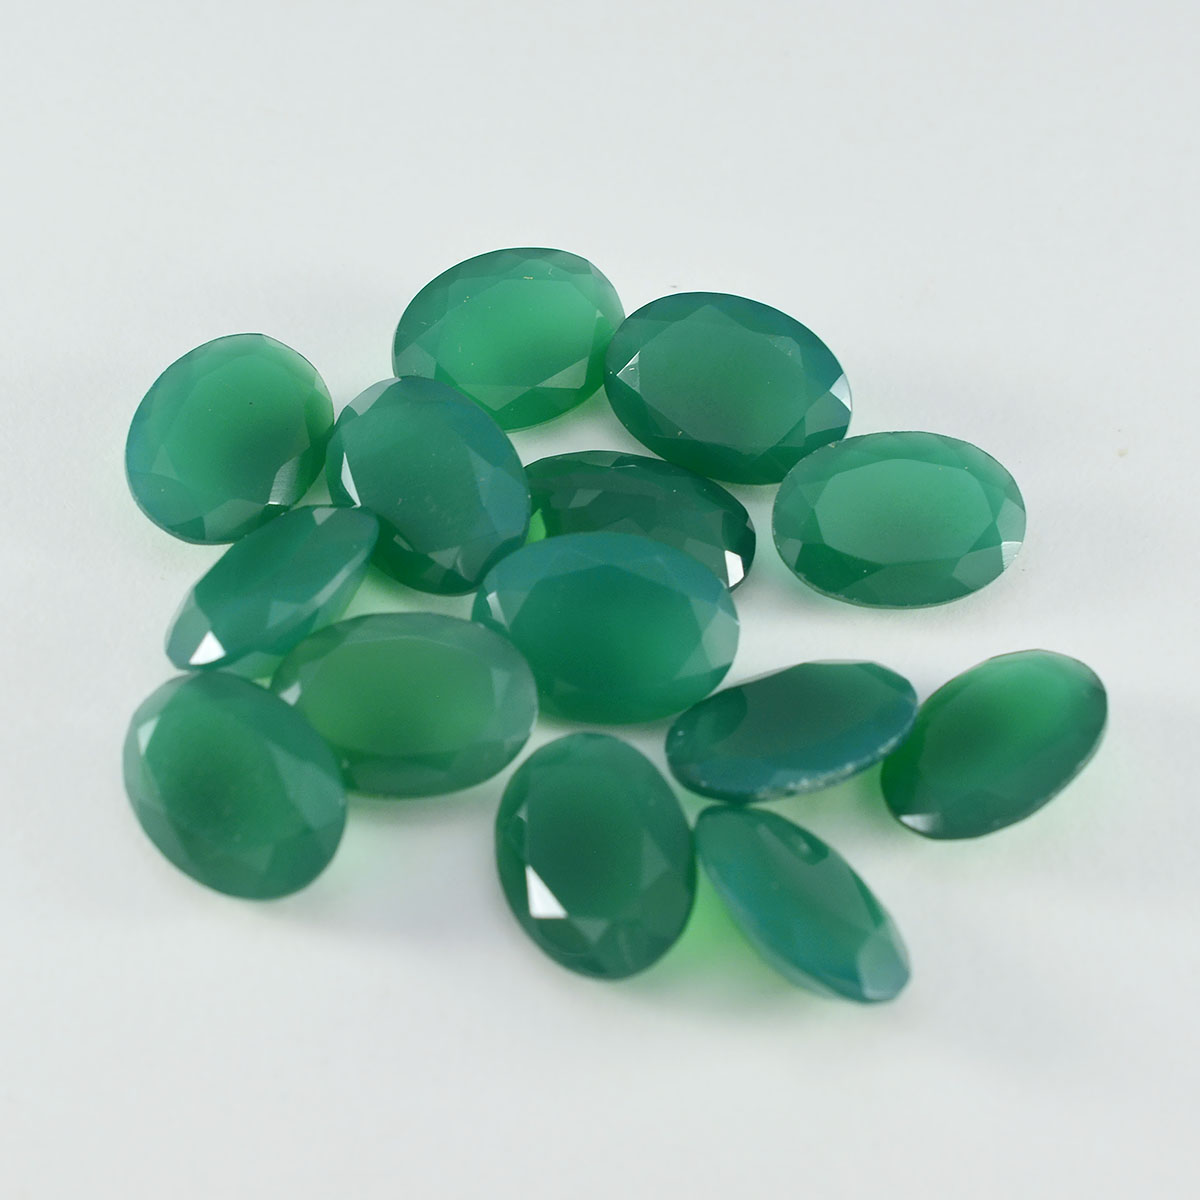 Riyogems 1 pièce d'onyx vert véritable à facettes 6x8mm forme ovale belle qualité pierre précieuse en vrac